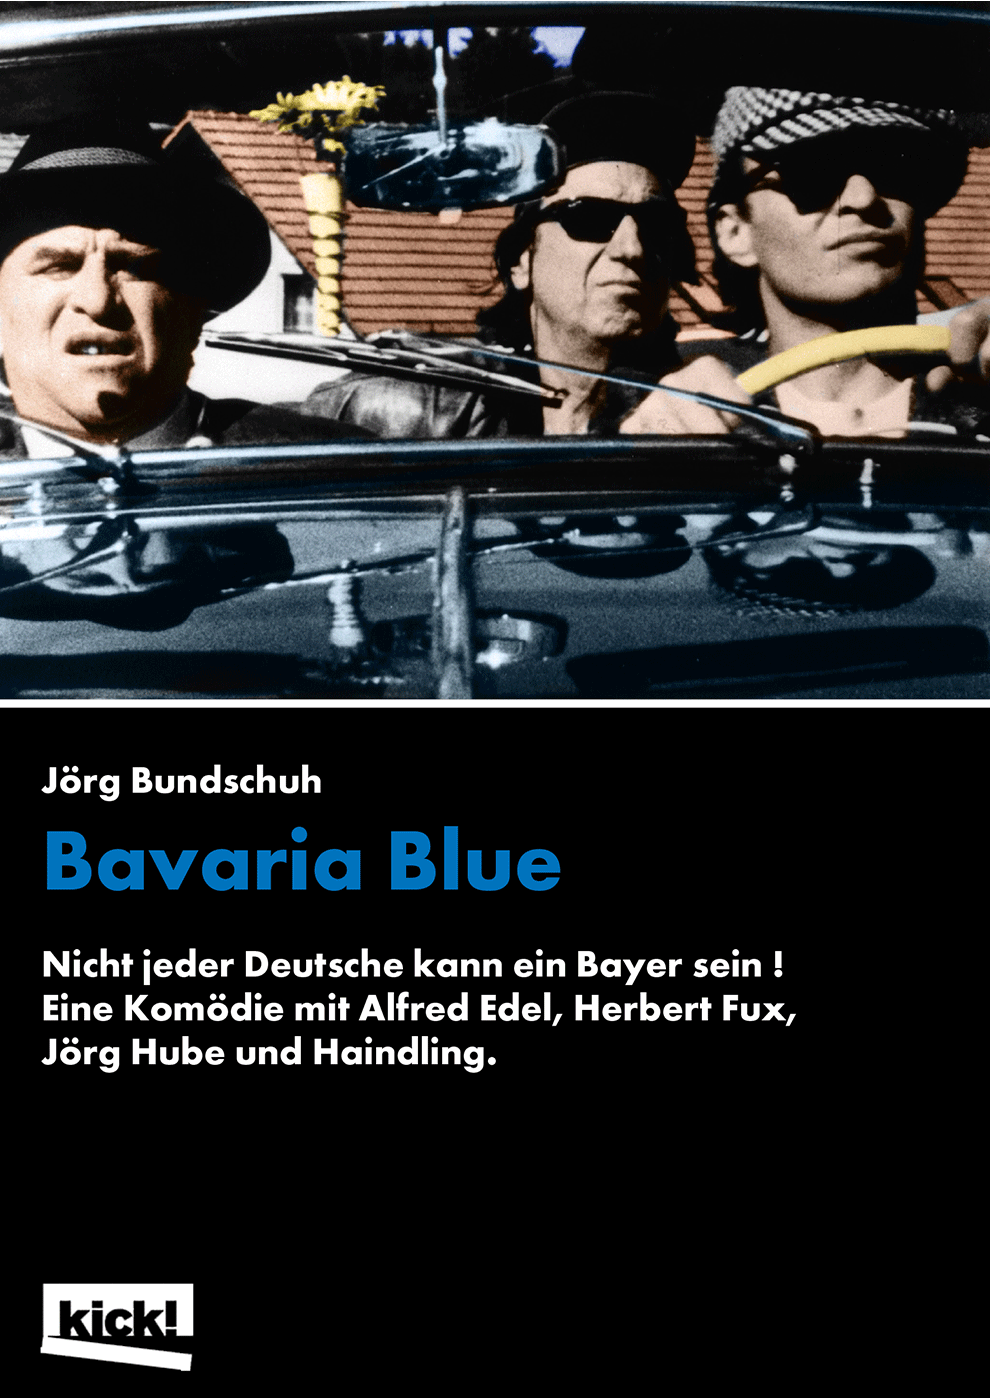 BAVARIA BLUE Ein Film von Jörg Bundschuh